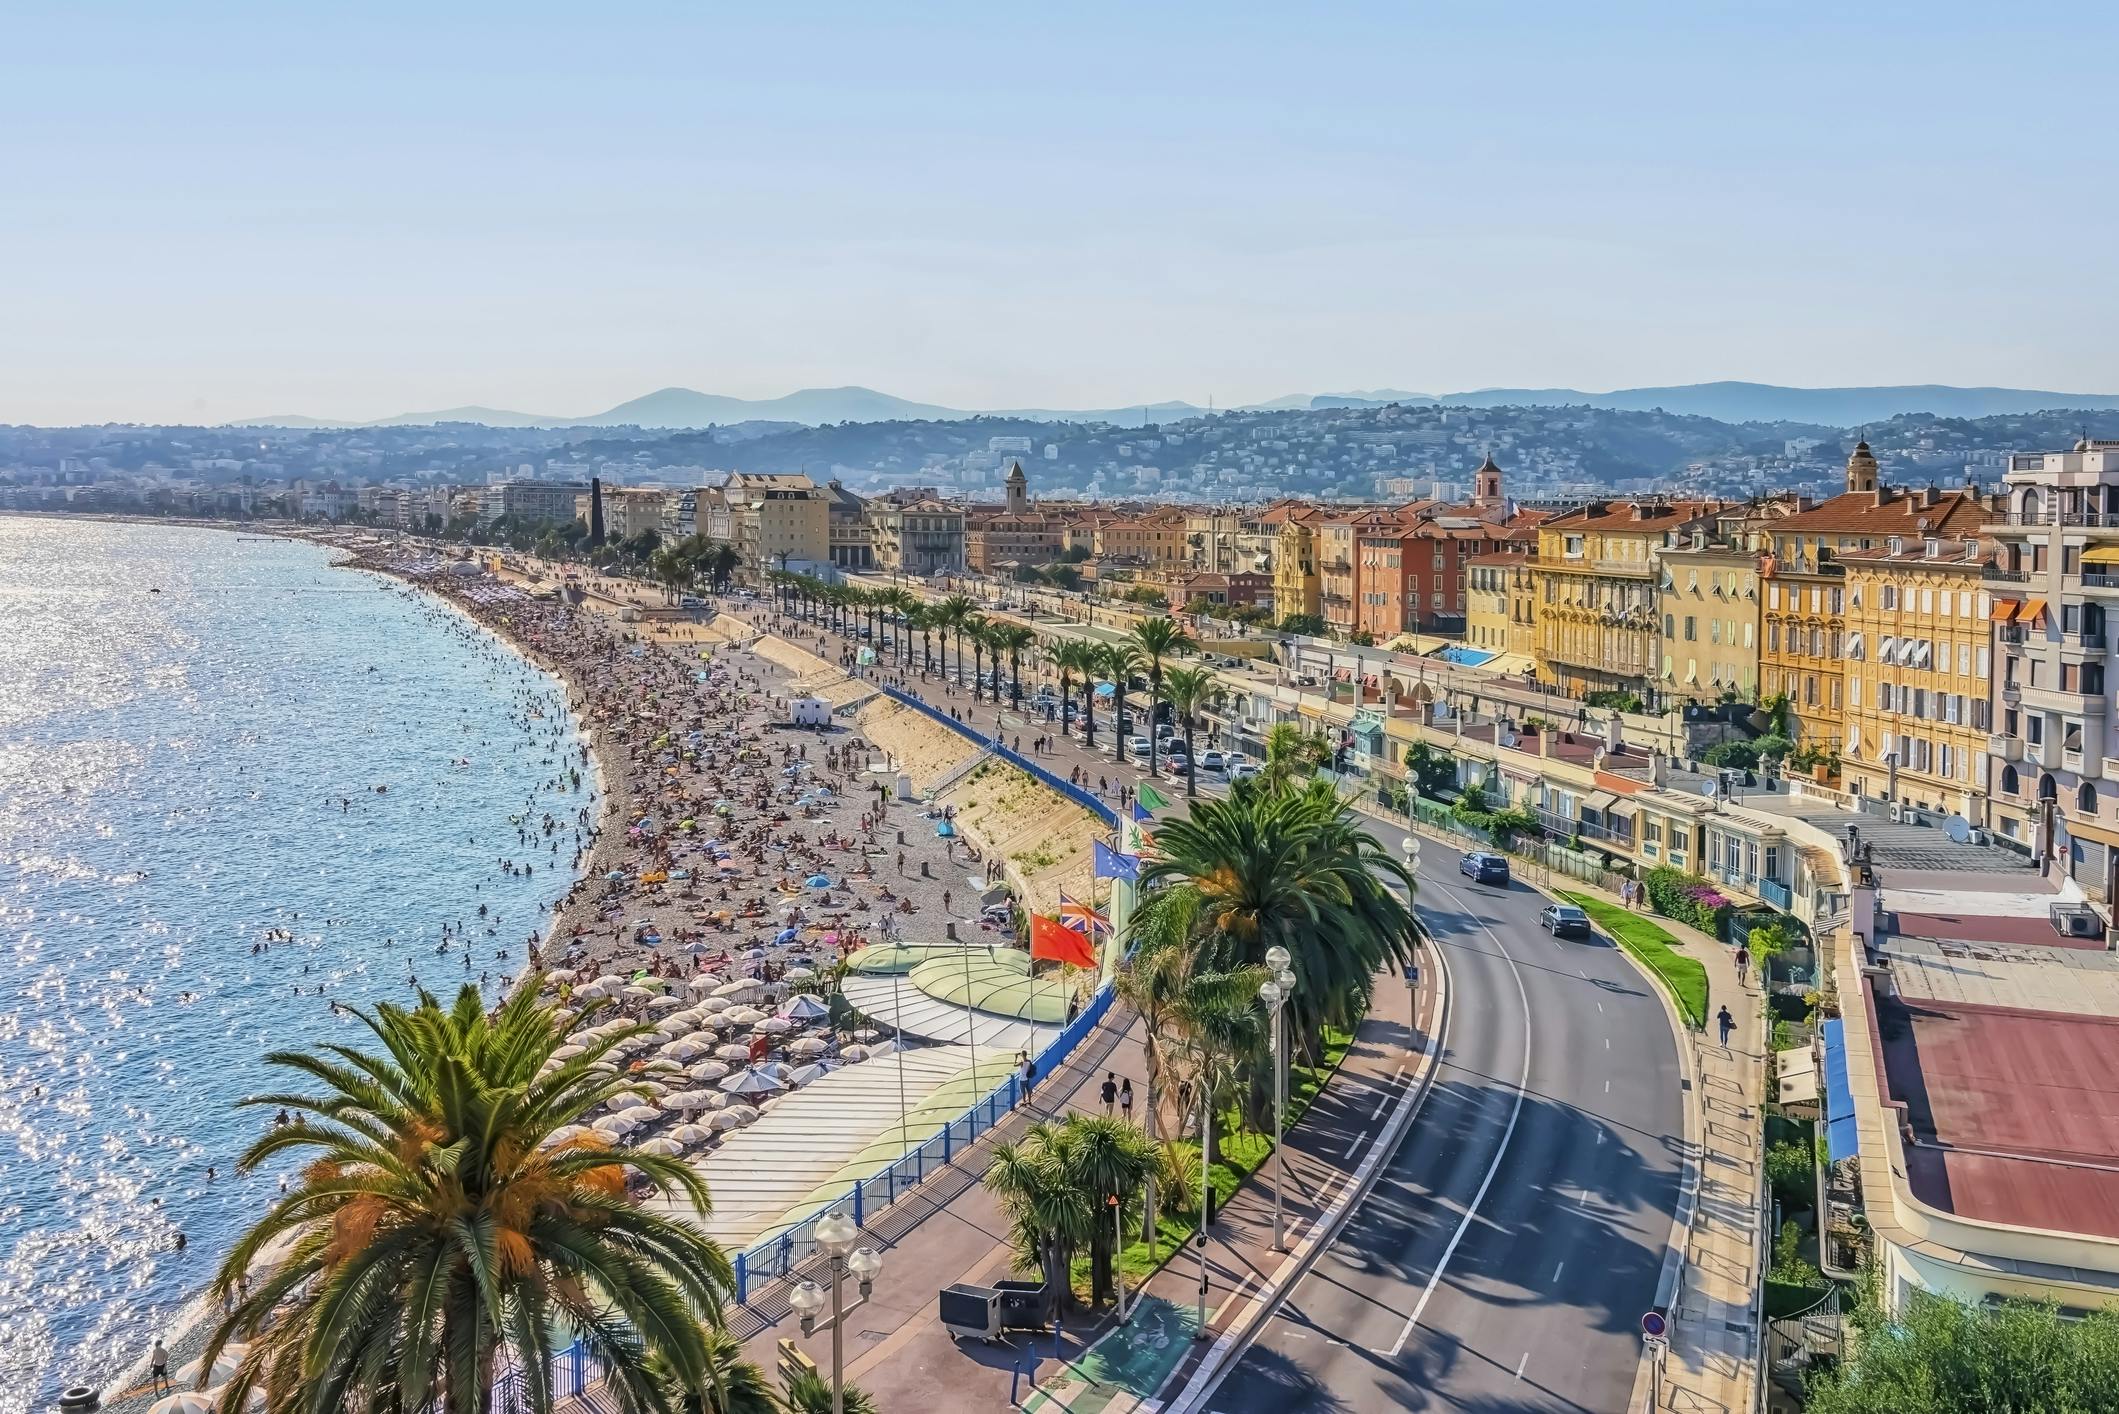 Ilmanäkymä Nizzan rantapromenadista. Näkymässä näkyy lisäksi rakennuksia ja liikennettä